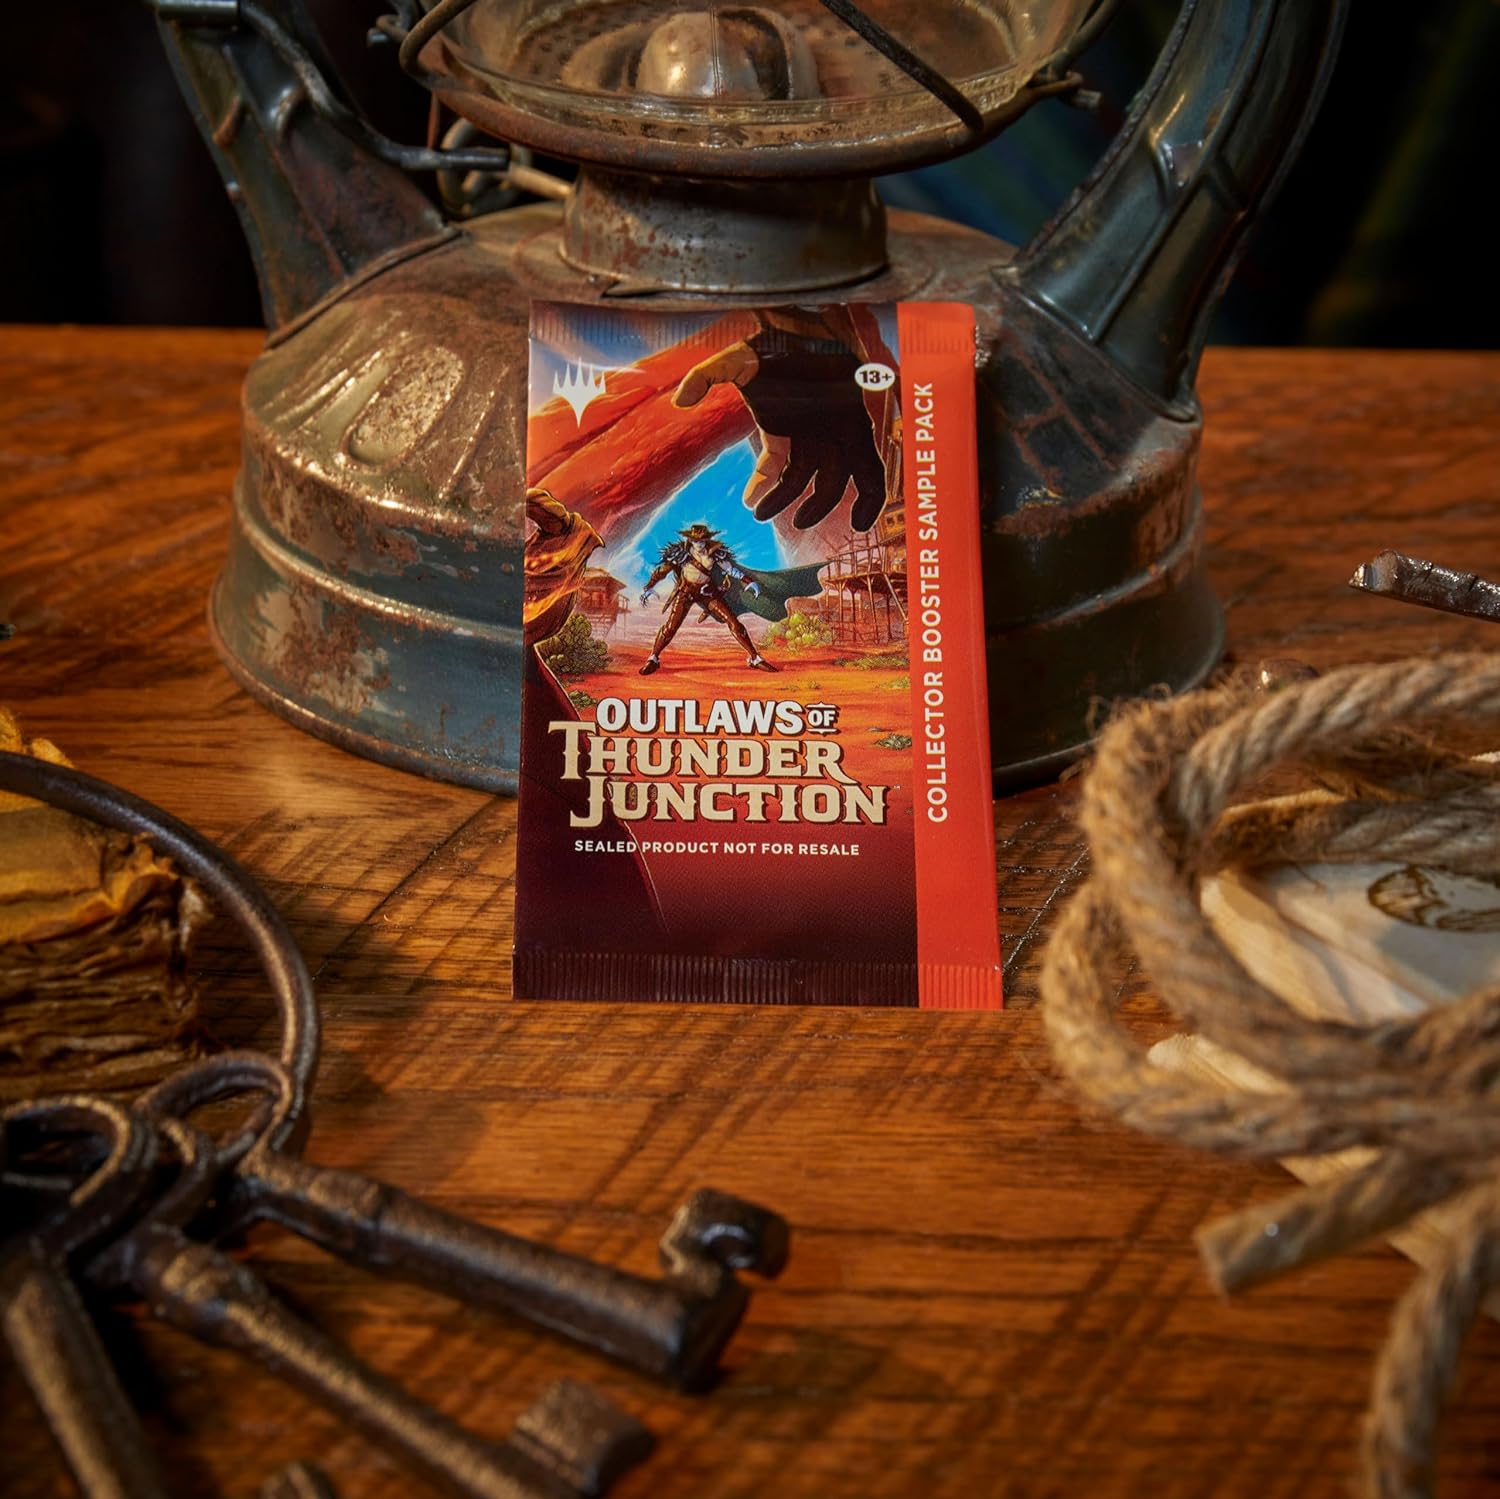 MTG Outlaws of Thunder Junction Commander Deck Bundle - Includes All 4 Decks